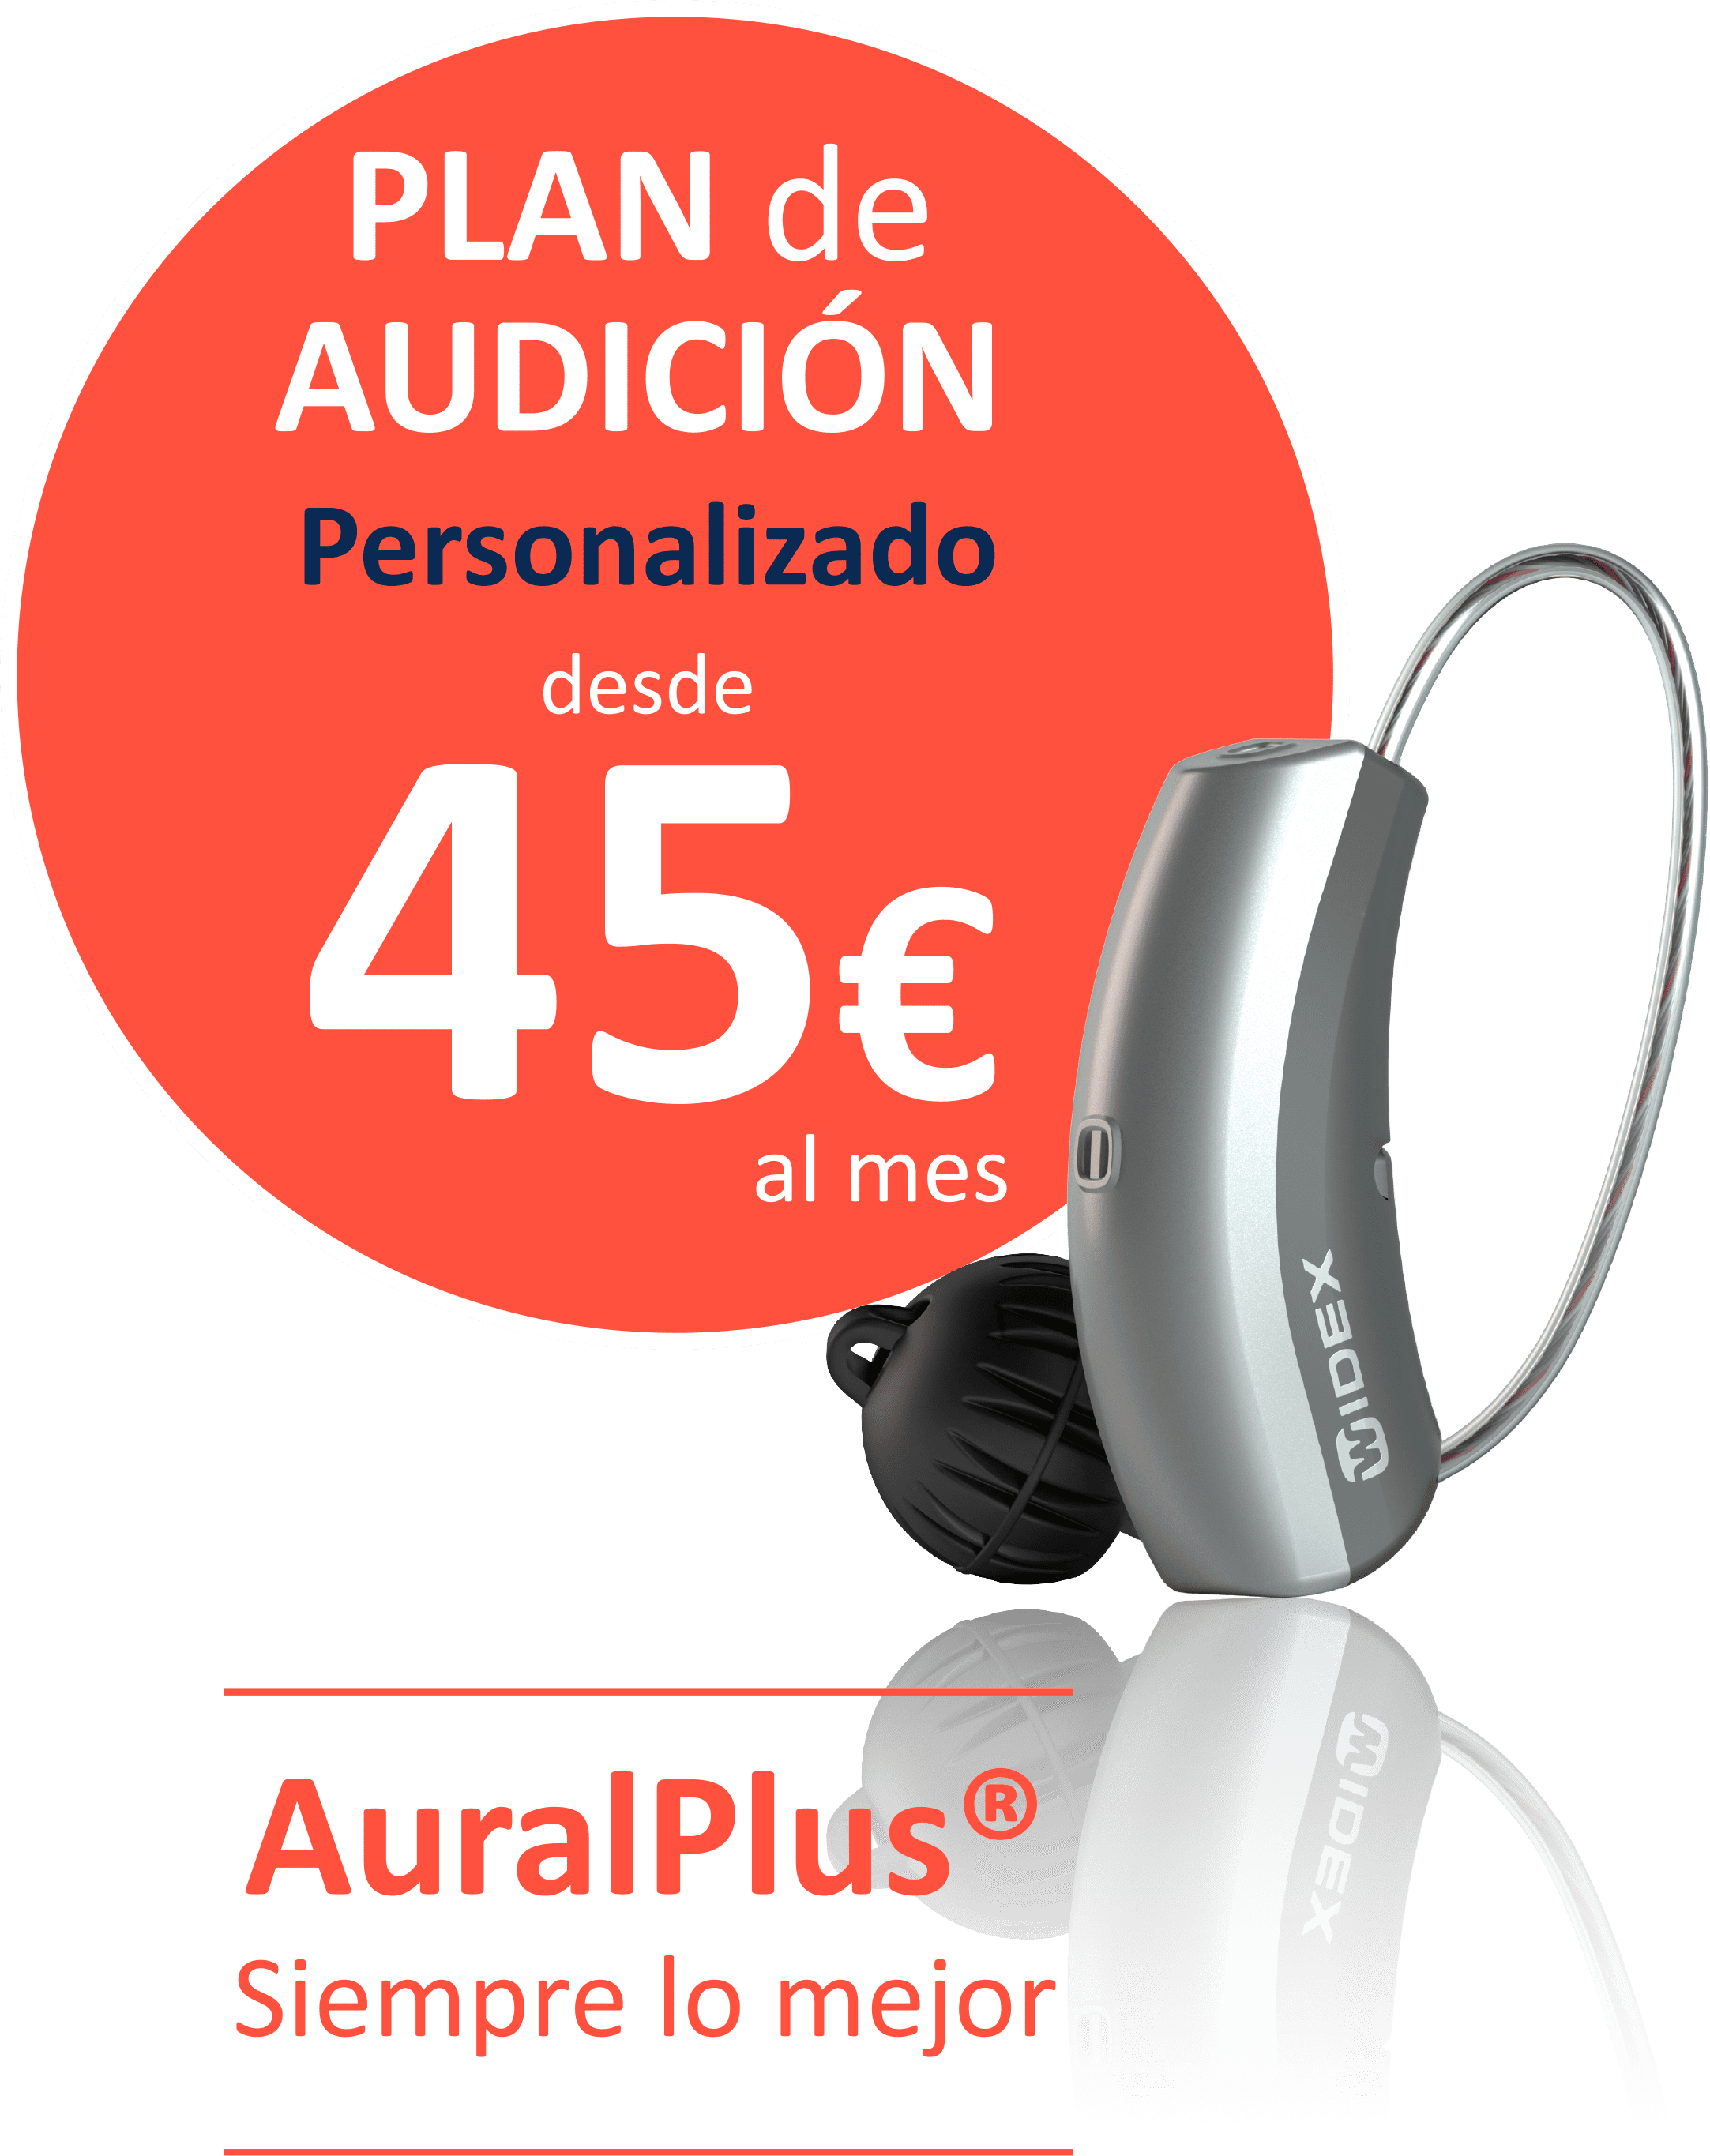 Desde 45 años, precio de los audífonos Aural